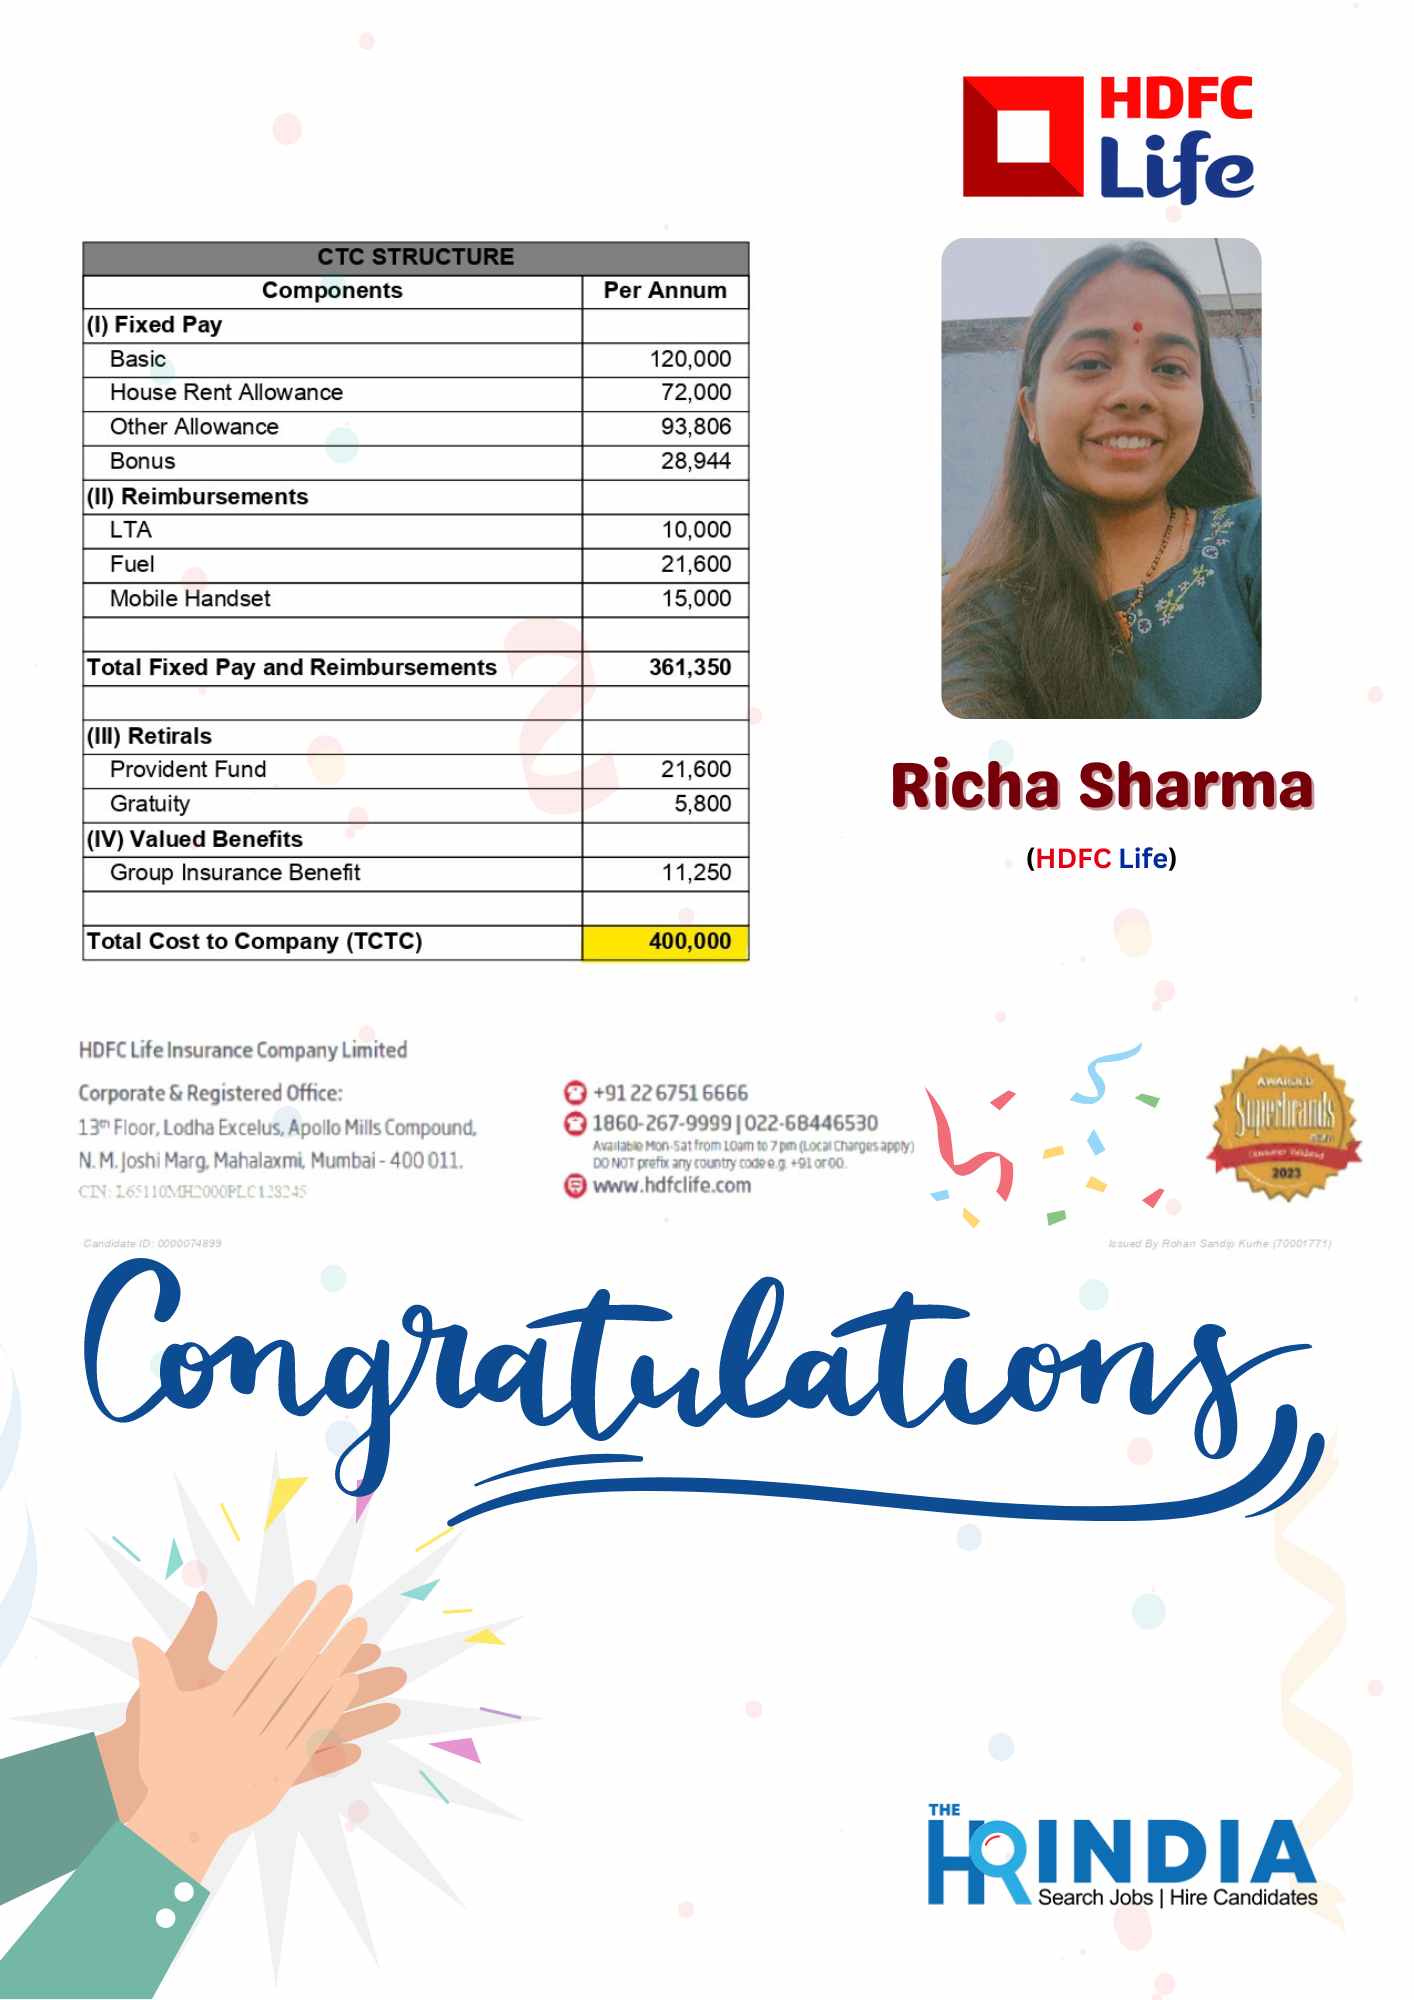 Richa Sharma (1)  | The HR India